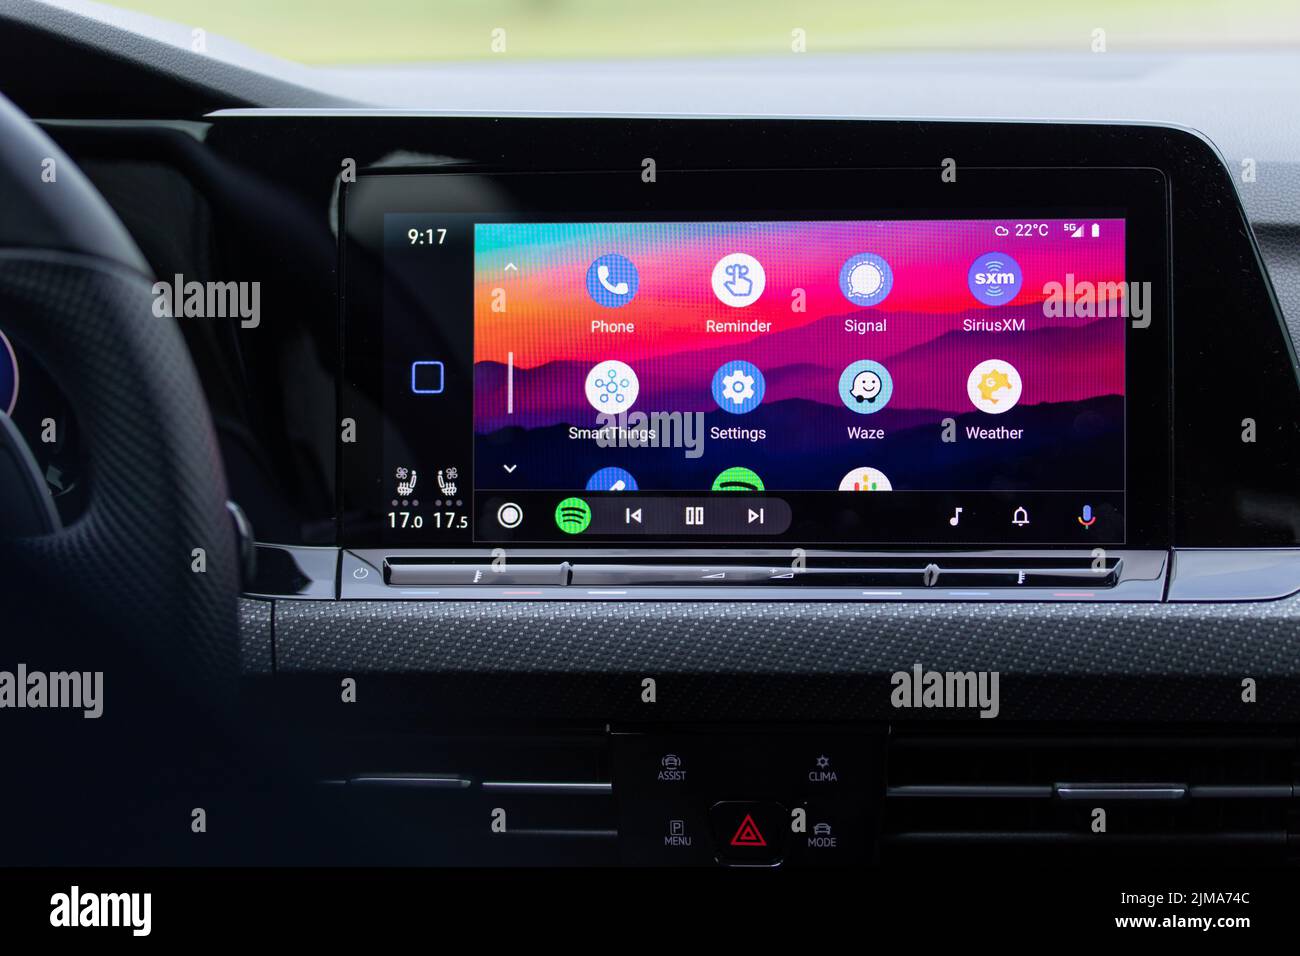 La pantalla de inicio de Android Auto, una aplicación desarrollada por Google, se ve en la pantalla de un coche nuevo. Foto de stock